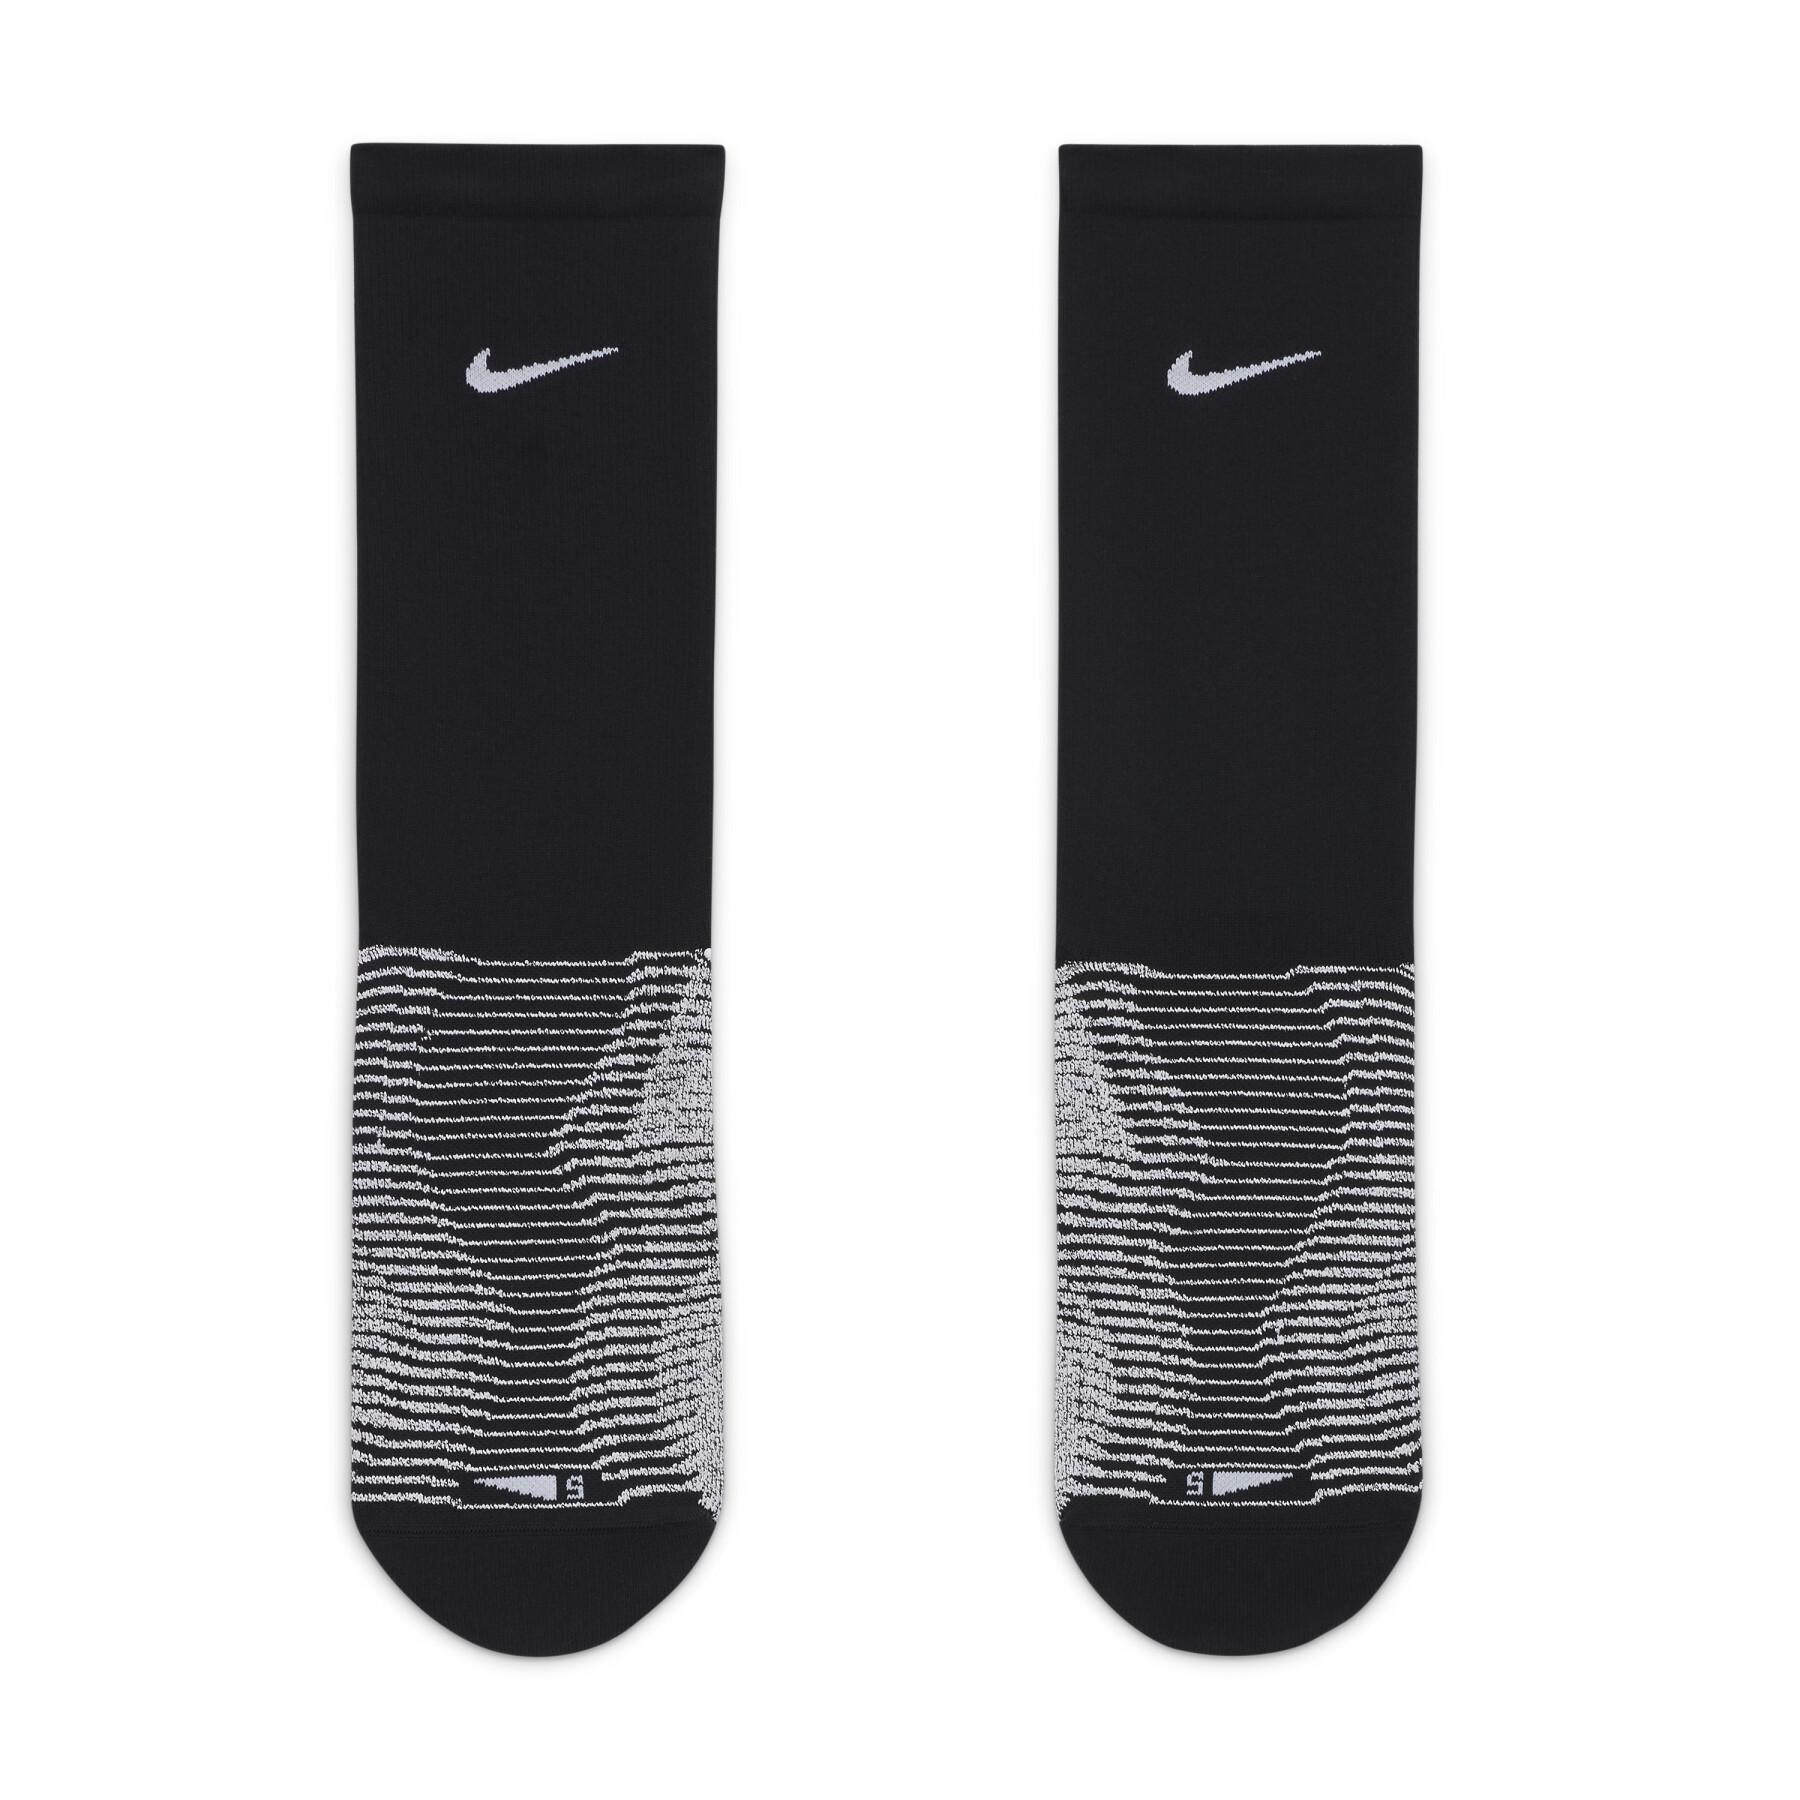 Calzini Nike Grip Vapor Strike